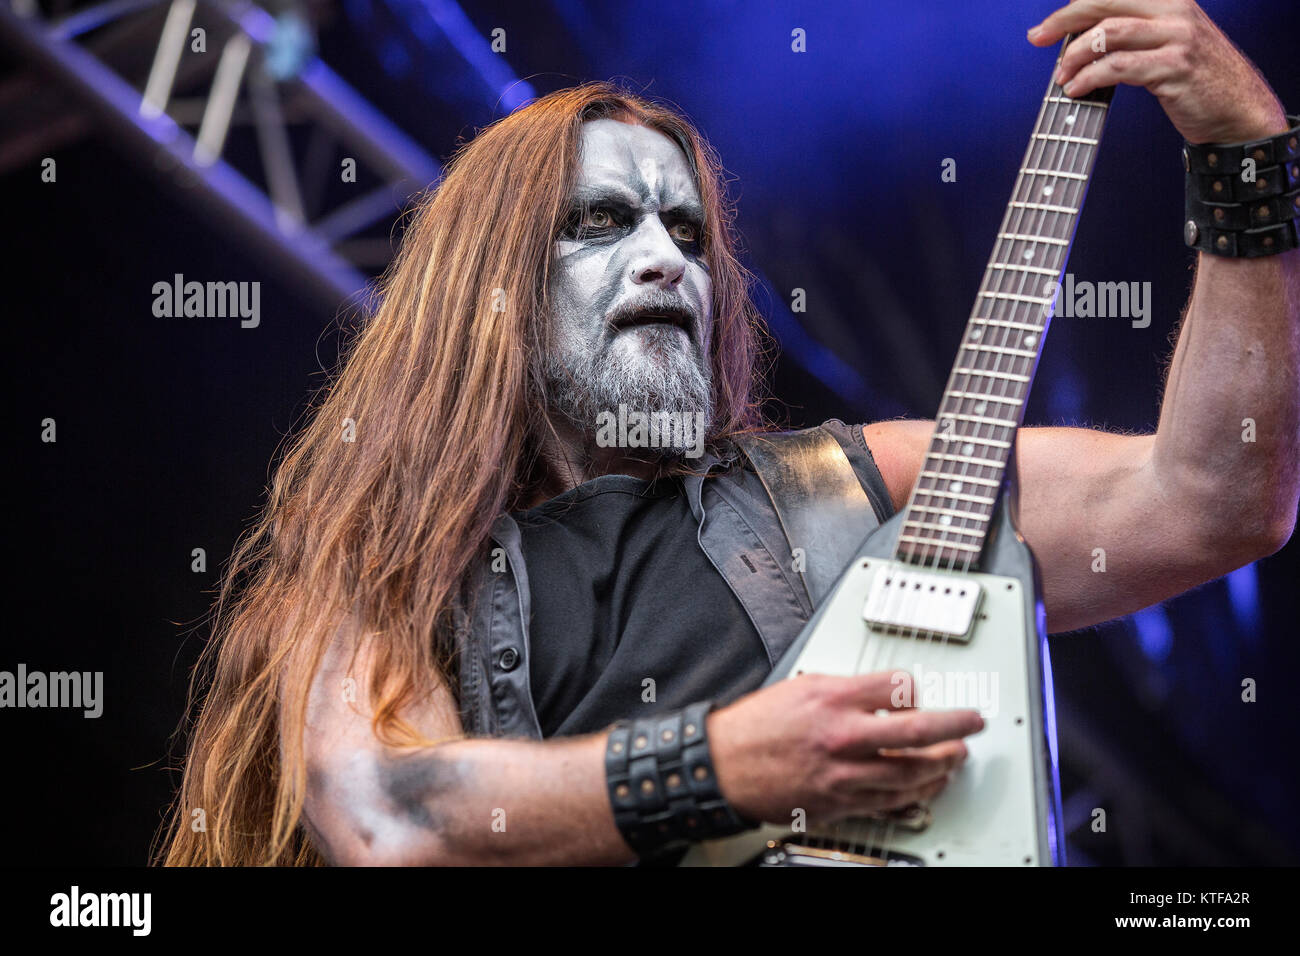 Il Norvegese black metal band Gaahls Wyrd esegue un concerto dal vivo al  garage di Bergen. Qui il chitarrista Stian Kaarstad è visto dal vivo sul  palco. Norvegia, 06/05 2016 Foto stock - Alamy